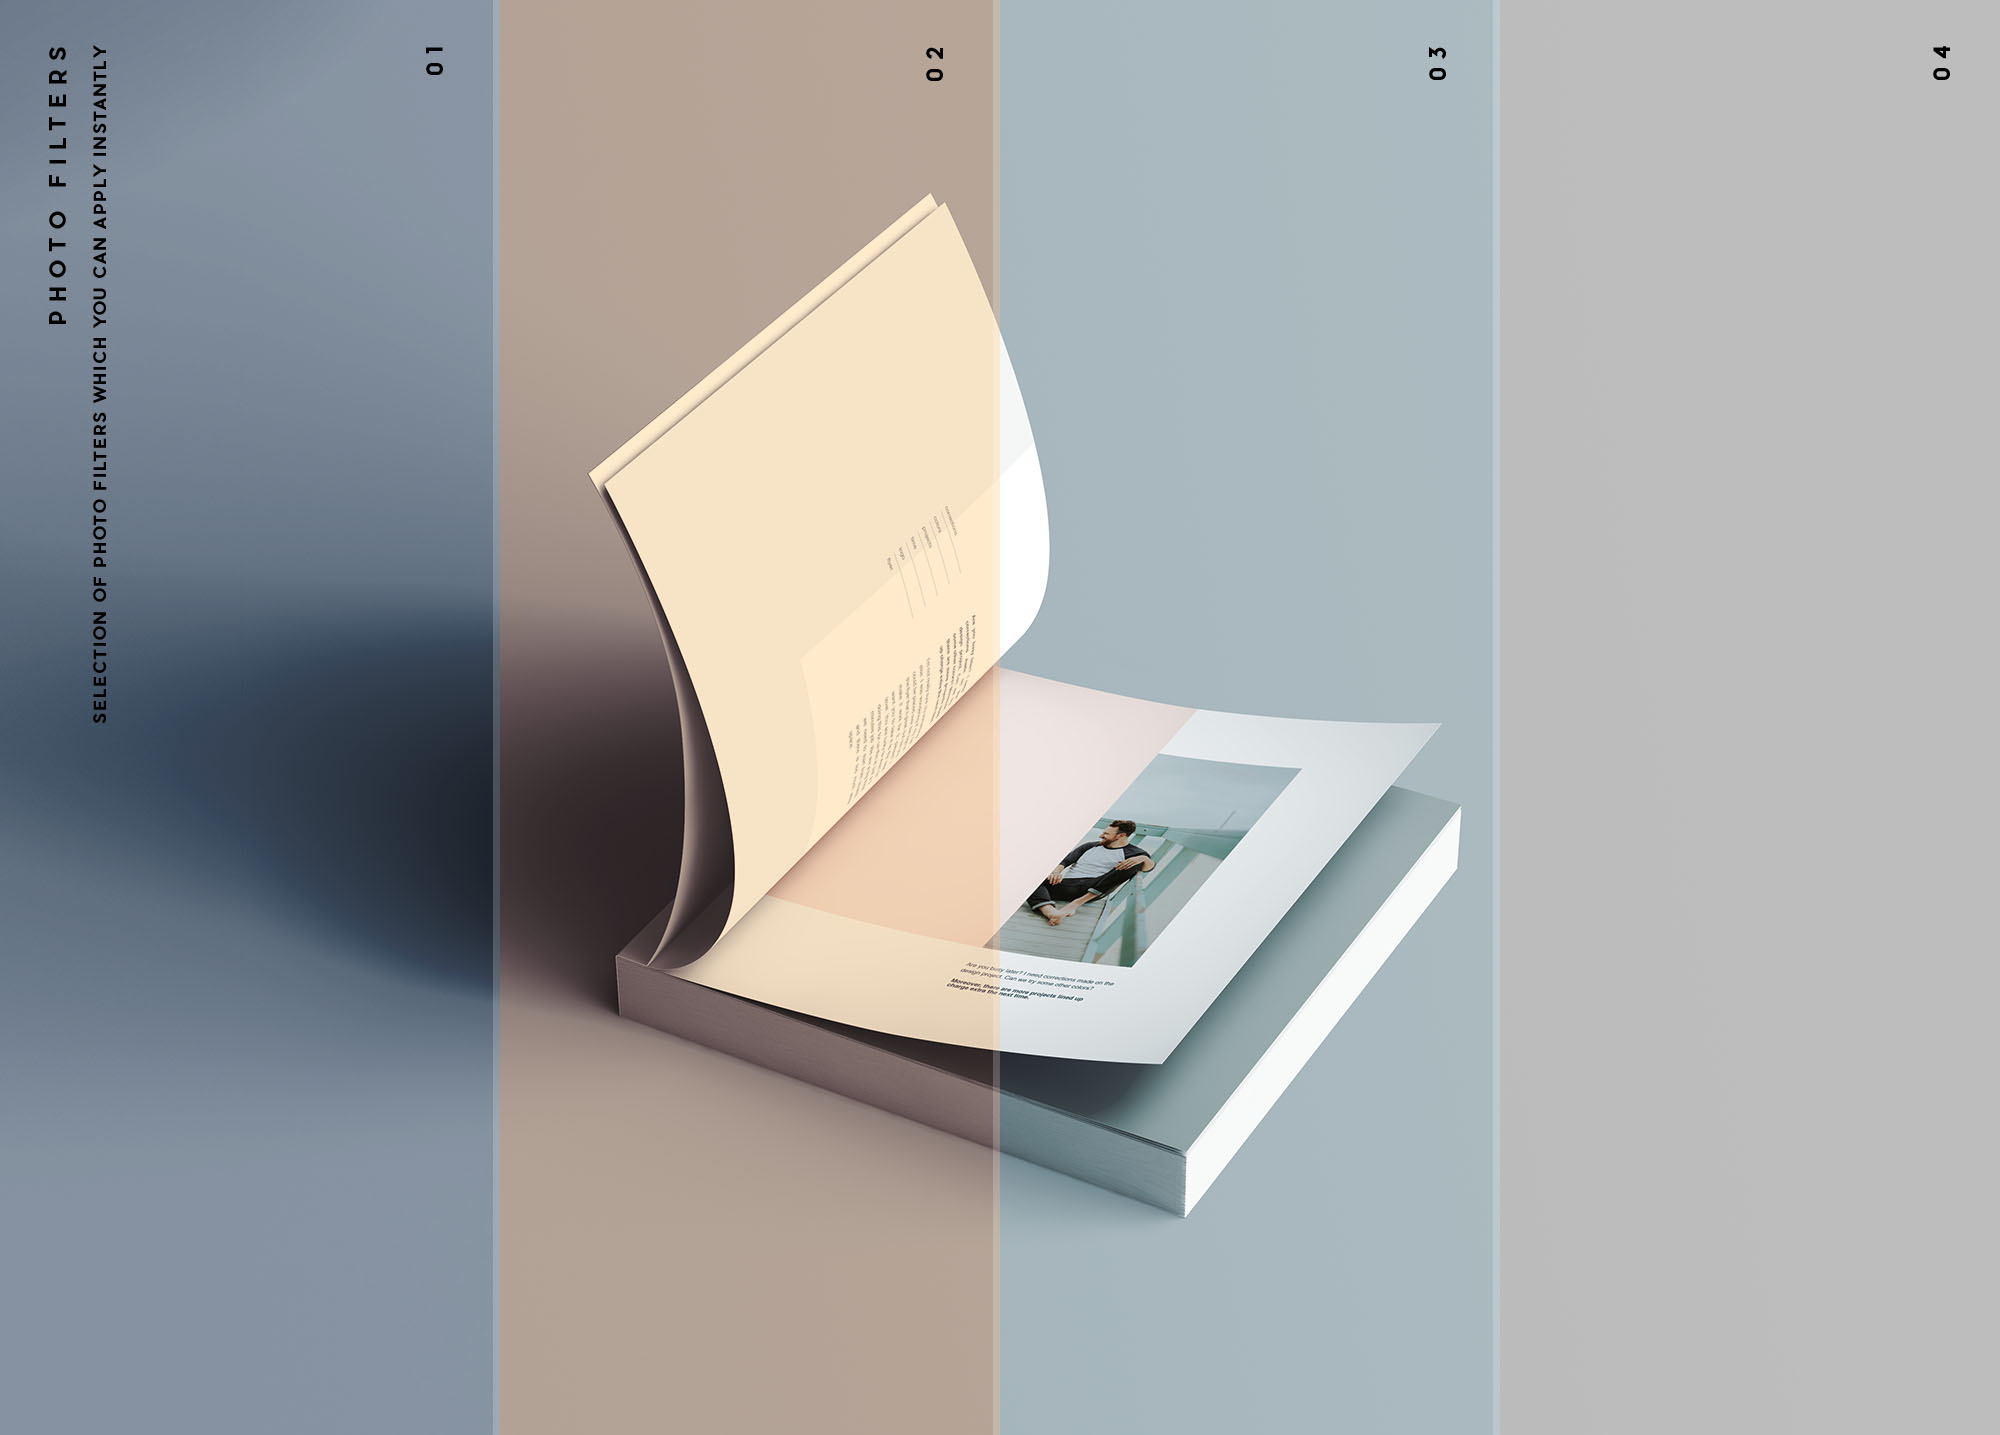 方形软封图书内页版式设计效果图样机素材中国精选 Square Softcover Book Mockup插图(10)